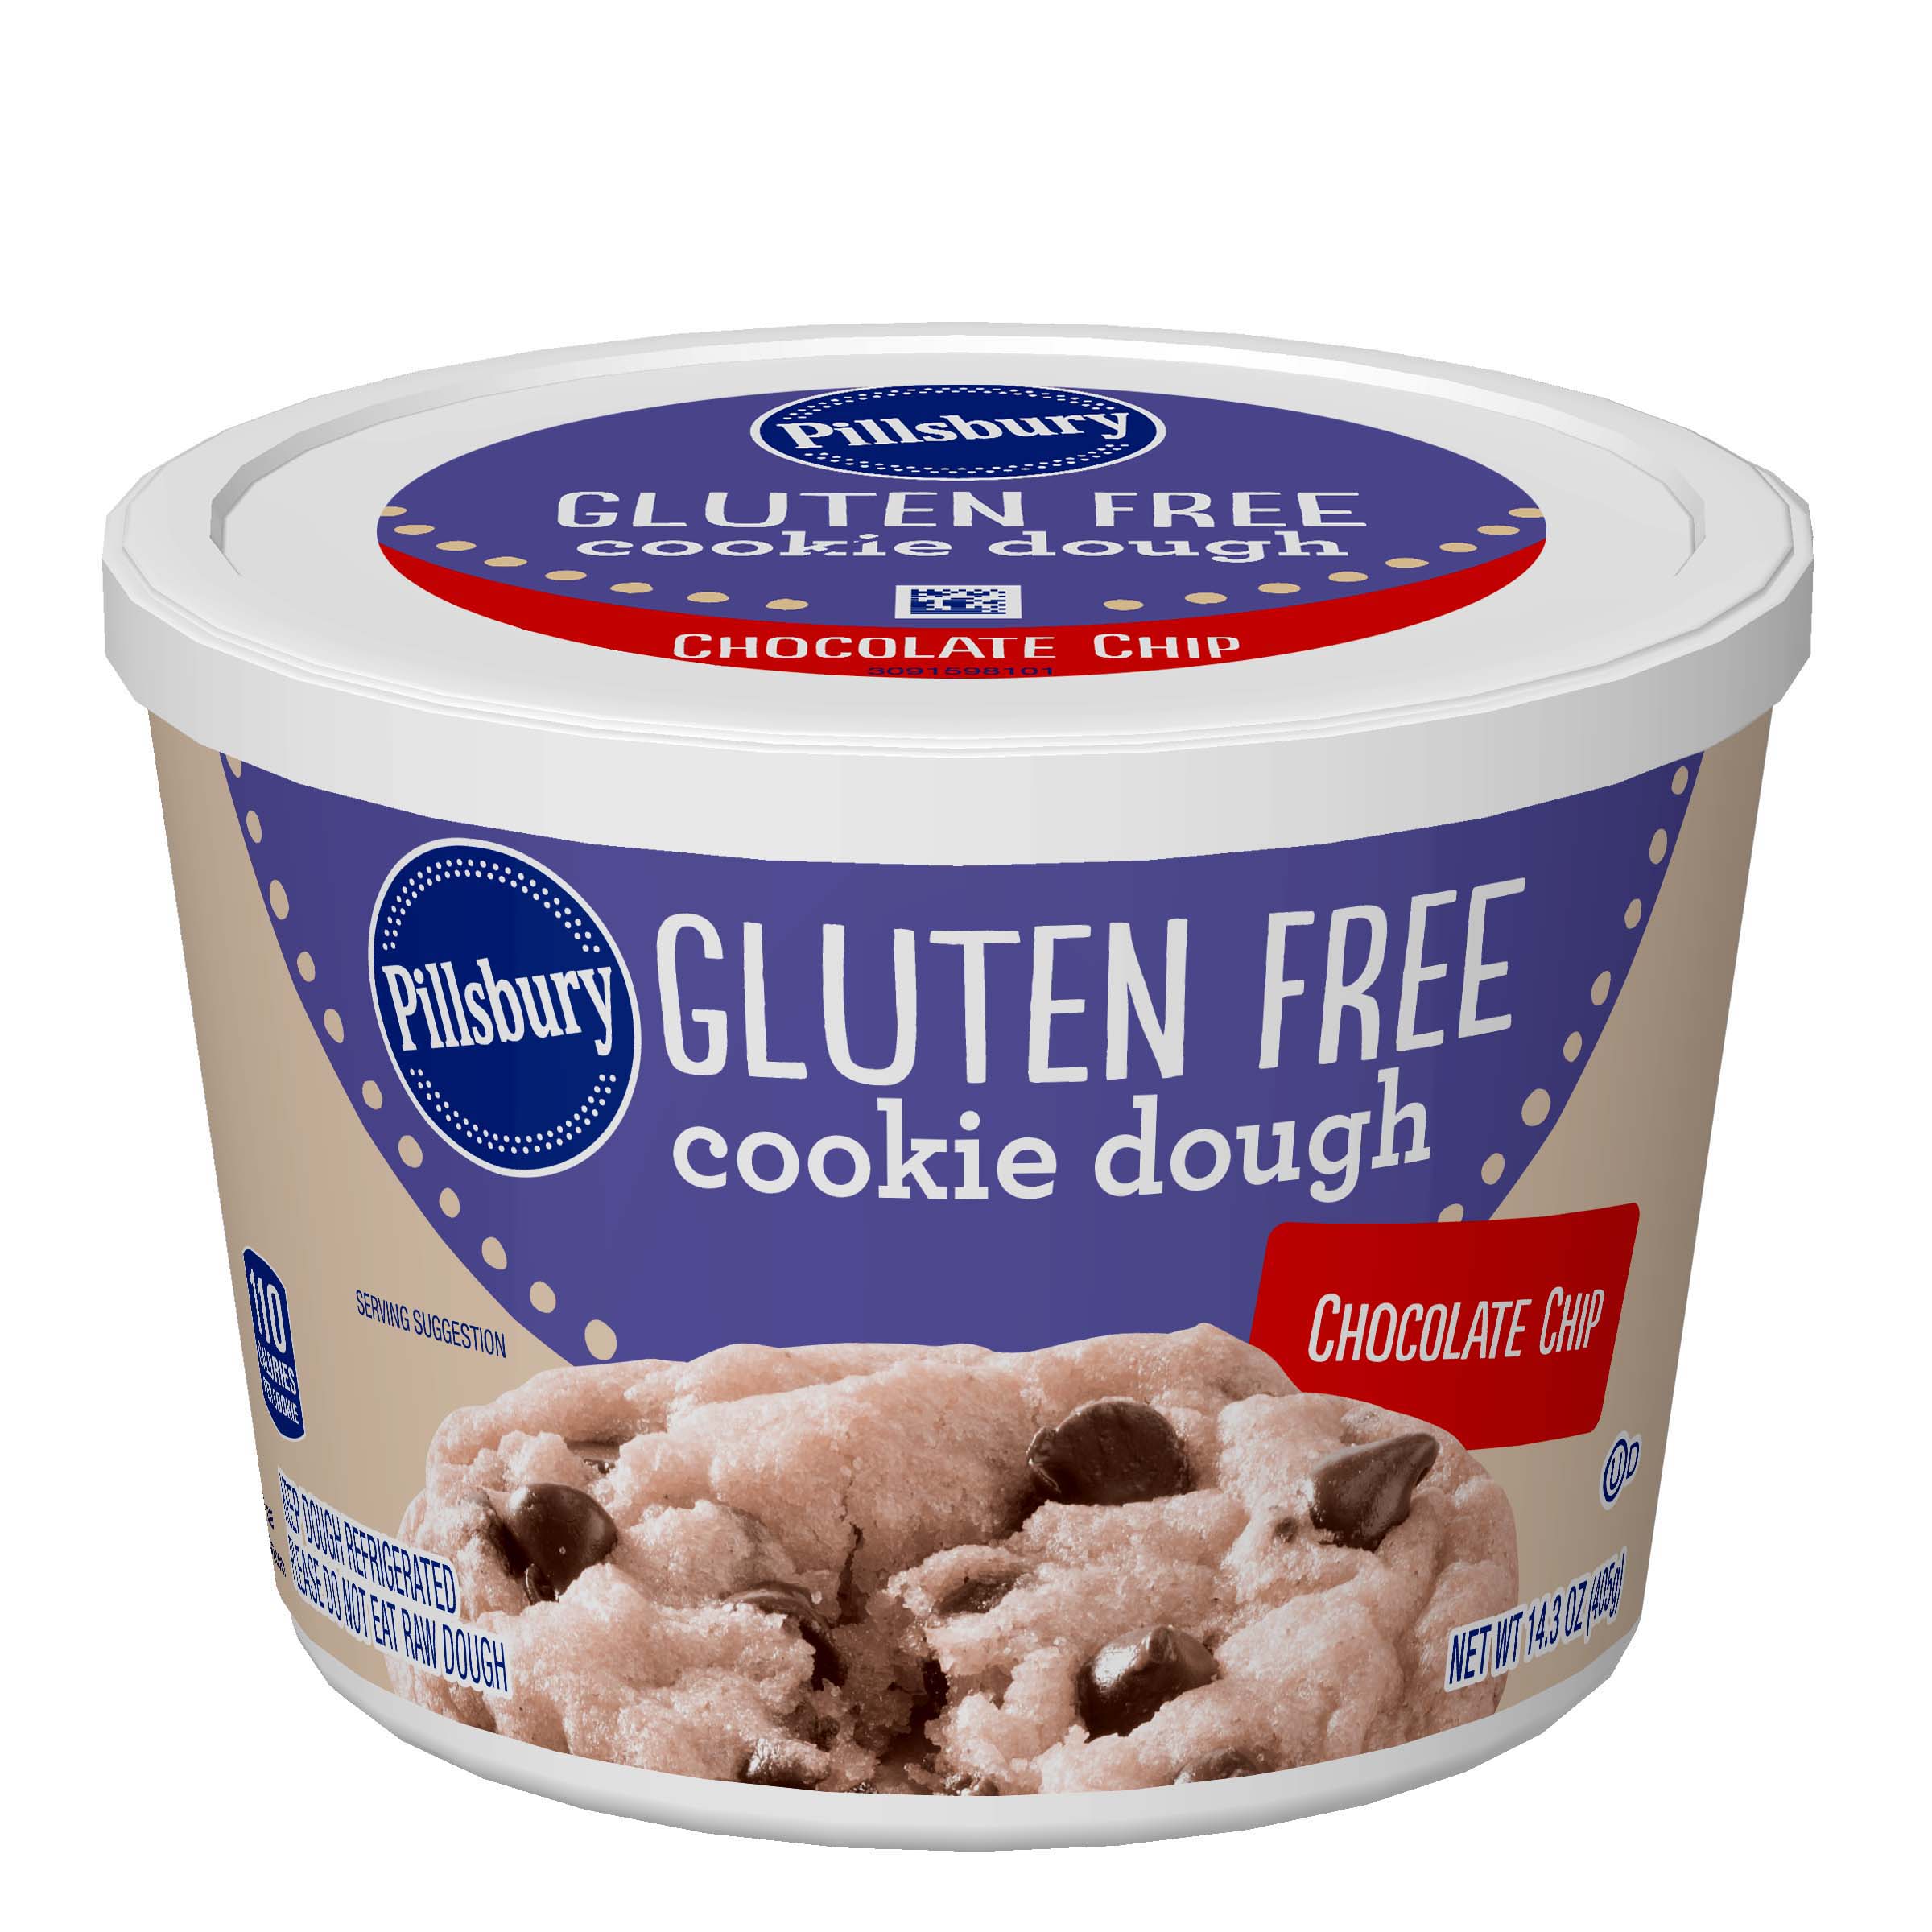 Gluten Free cookie dough